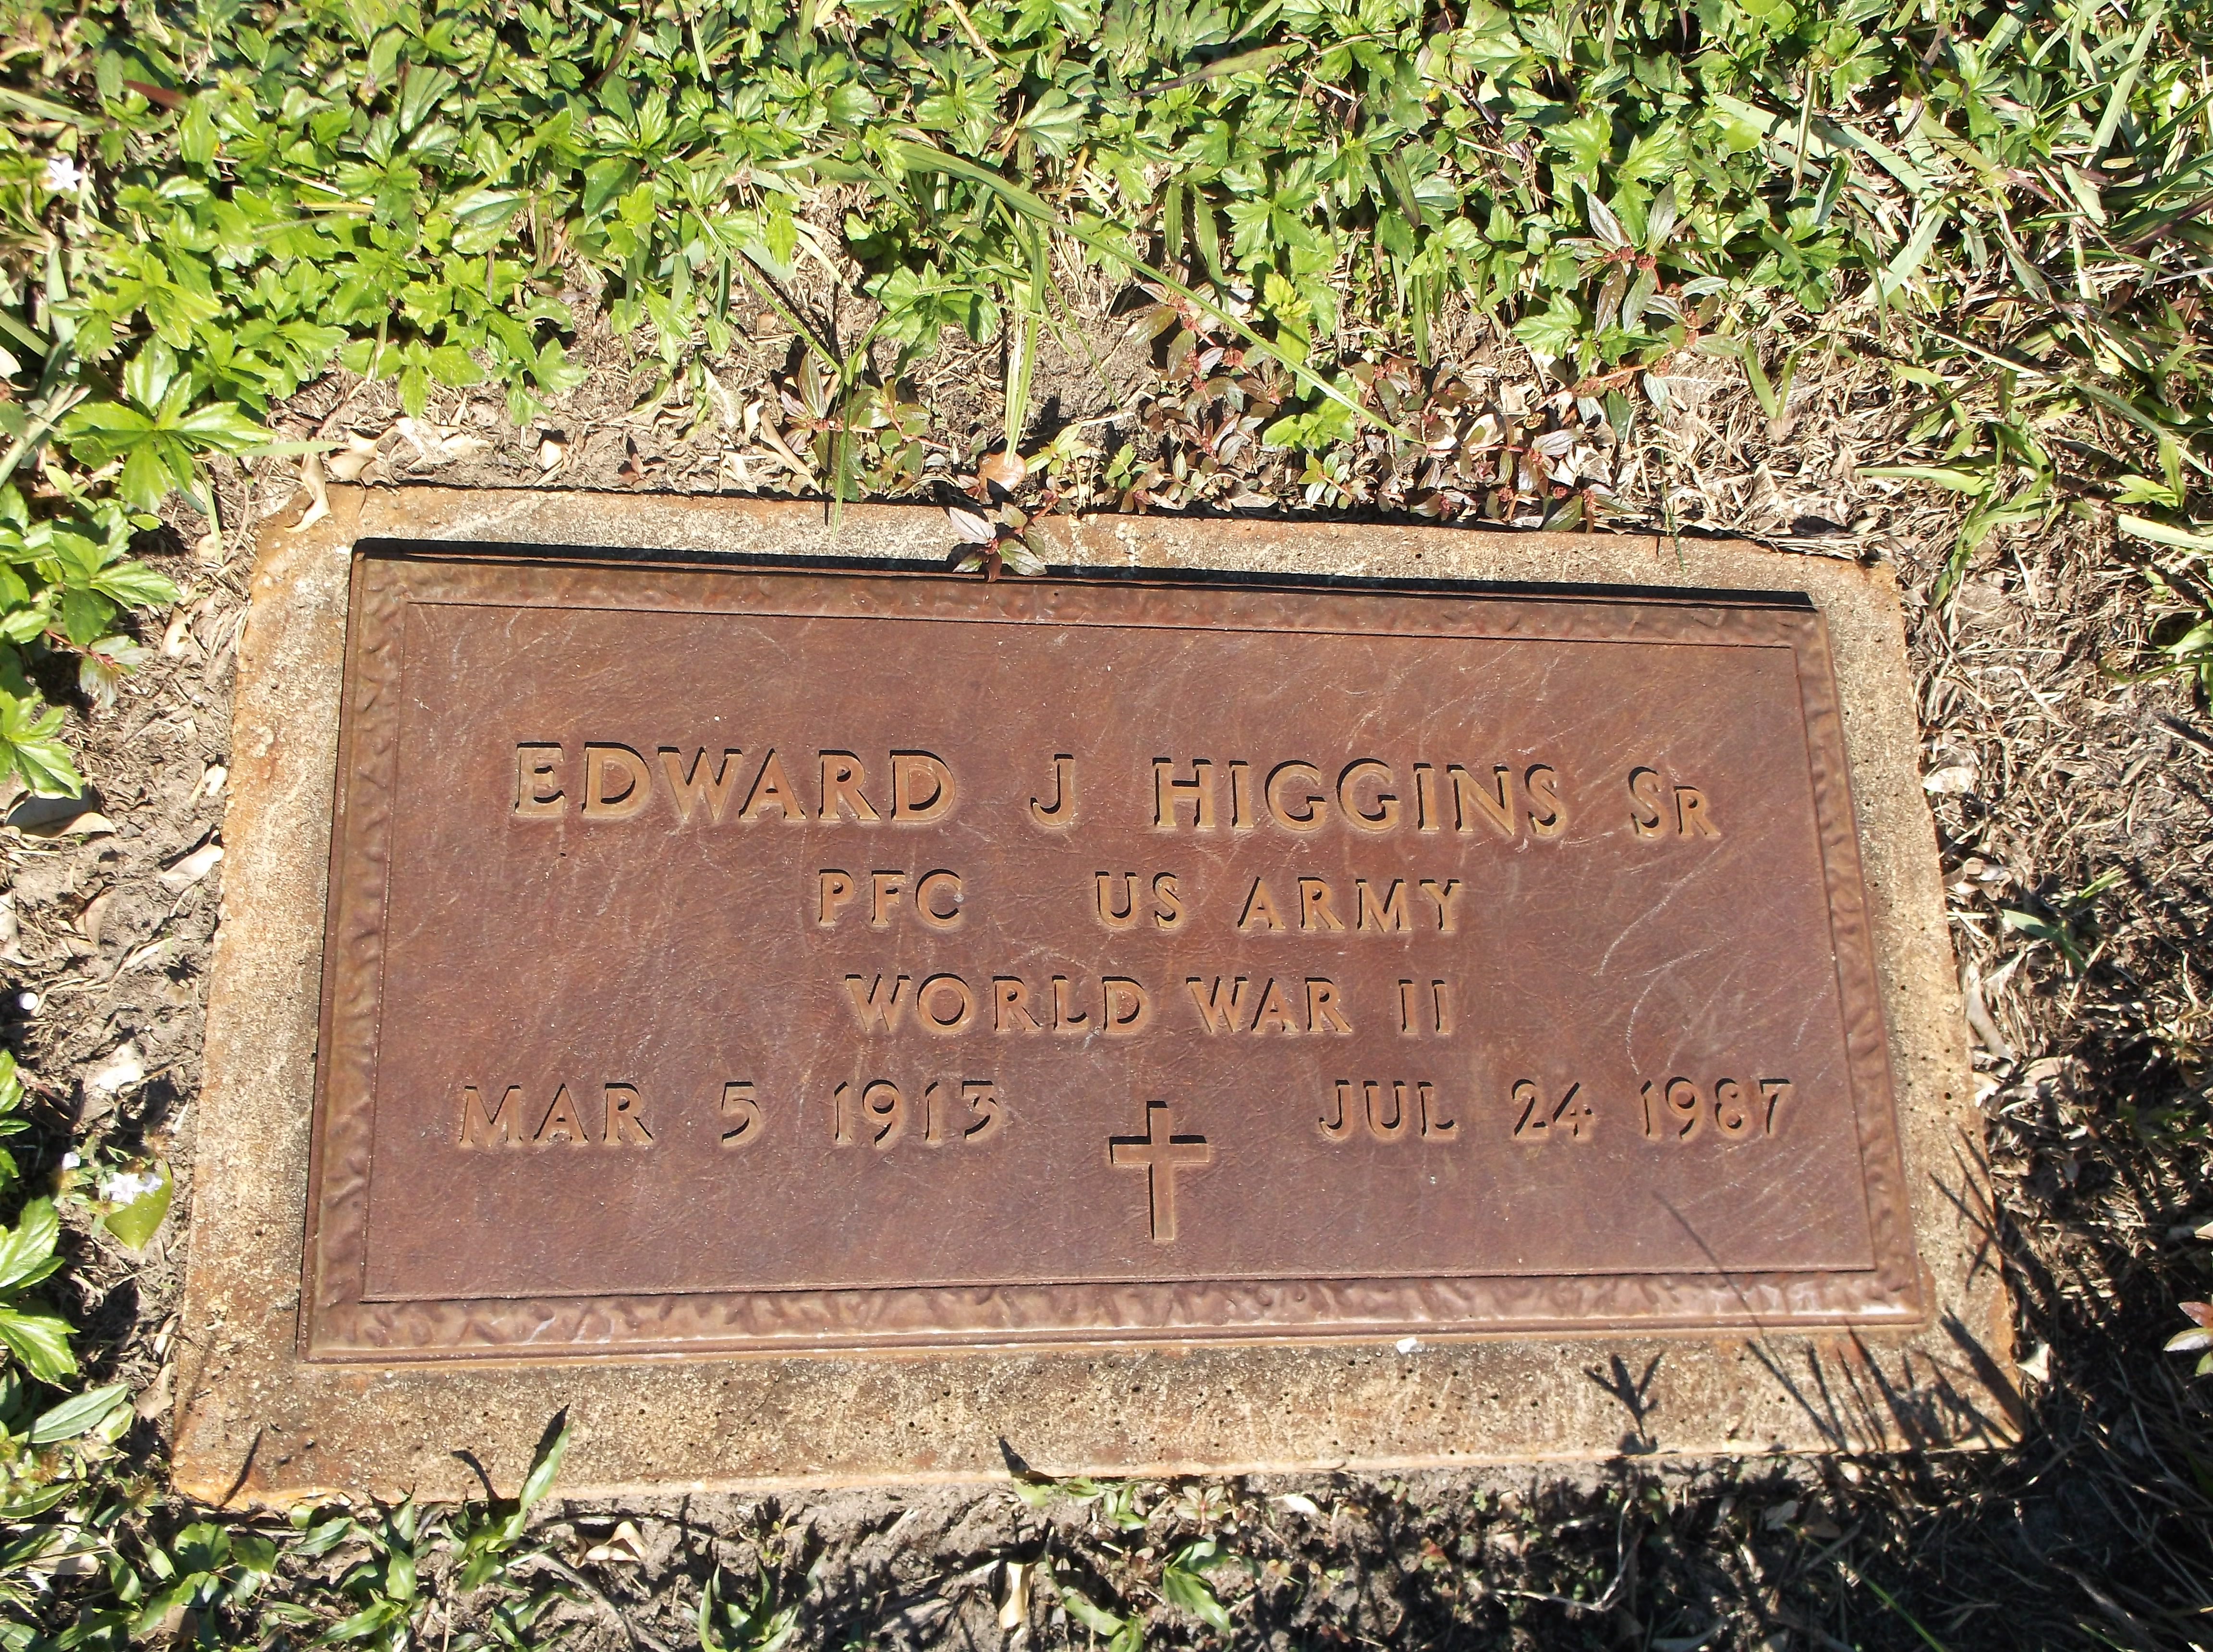 Edward J Higgins, Sr